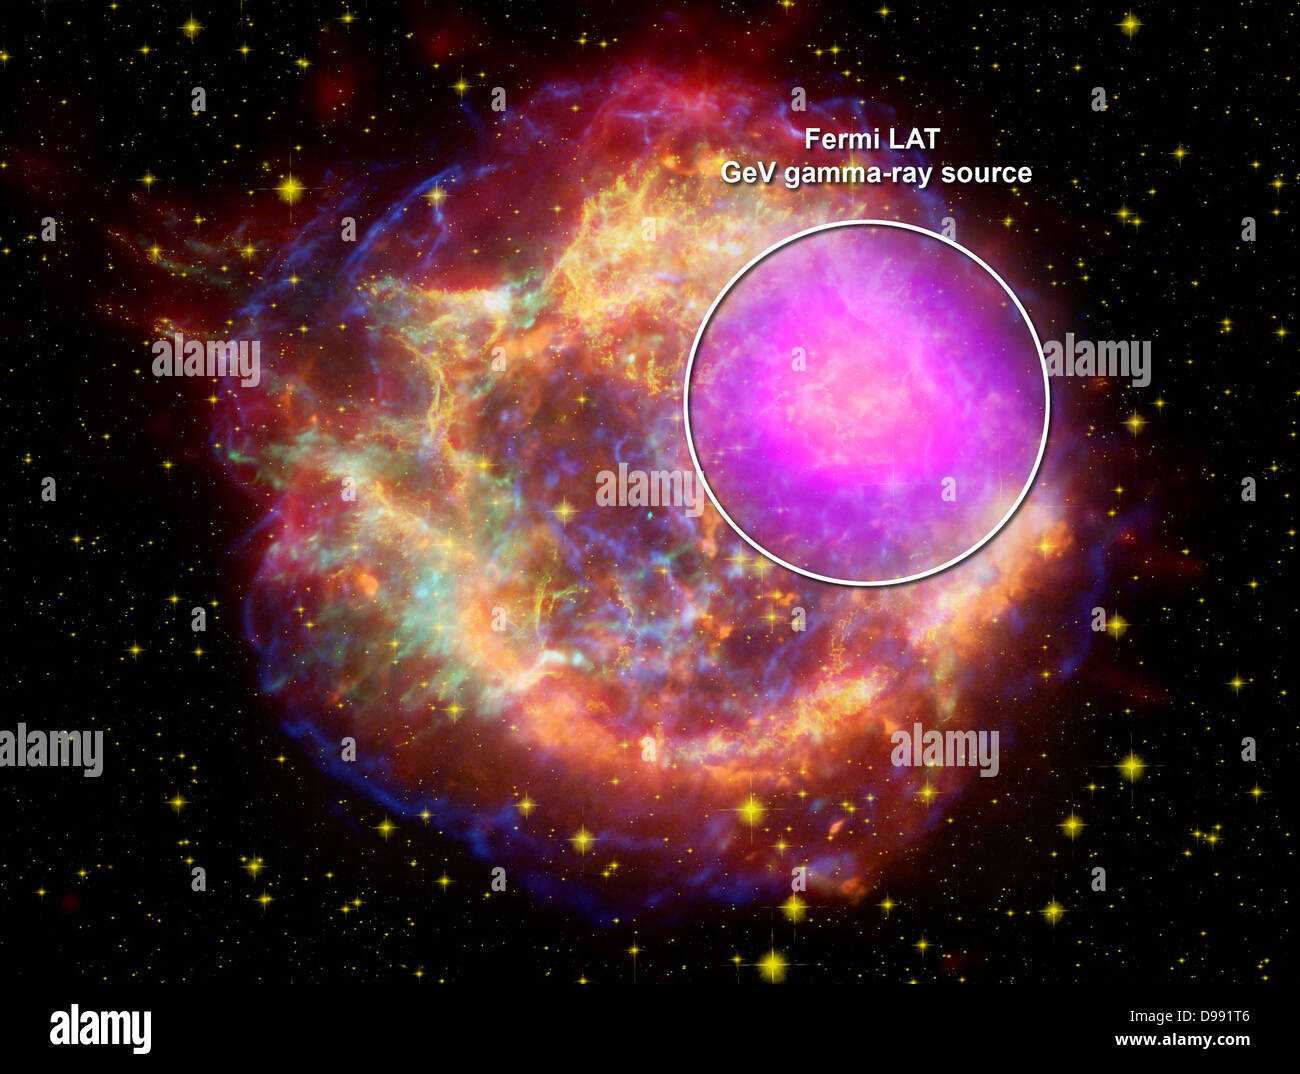 Composite der Supernova-Überrest Cassiopeia A über das gesamte Spektrum hinweg: Gammastrahlen (magenta) Fermi Gamma-ray Space Telescope; X-Strahlen (blau, grün) Chandra X-ray Observatory; sichtbares Licht (Gelb) vom Hubble-Teleskop. Wissenschaft Stockfoto